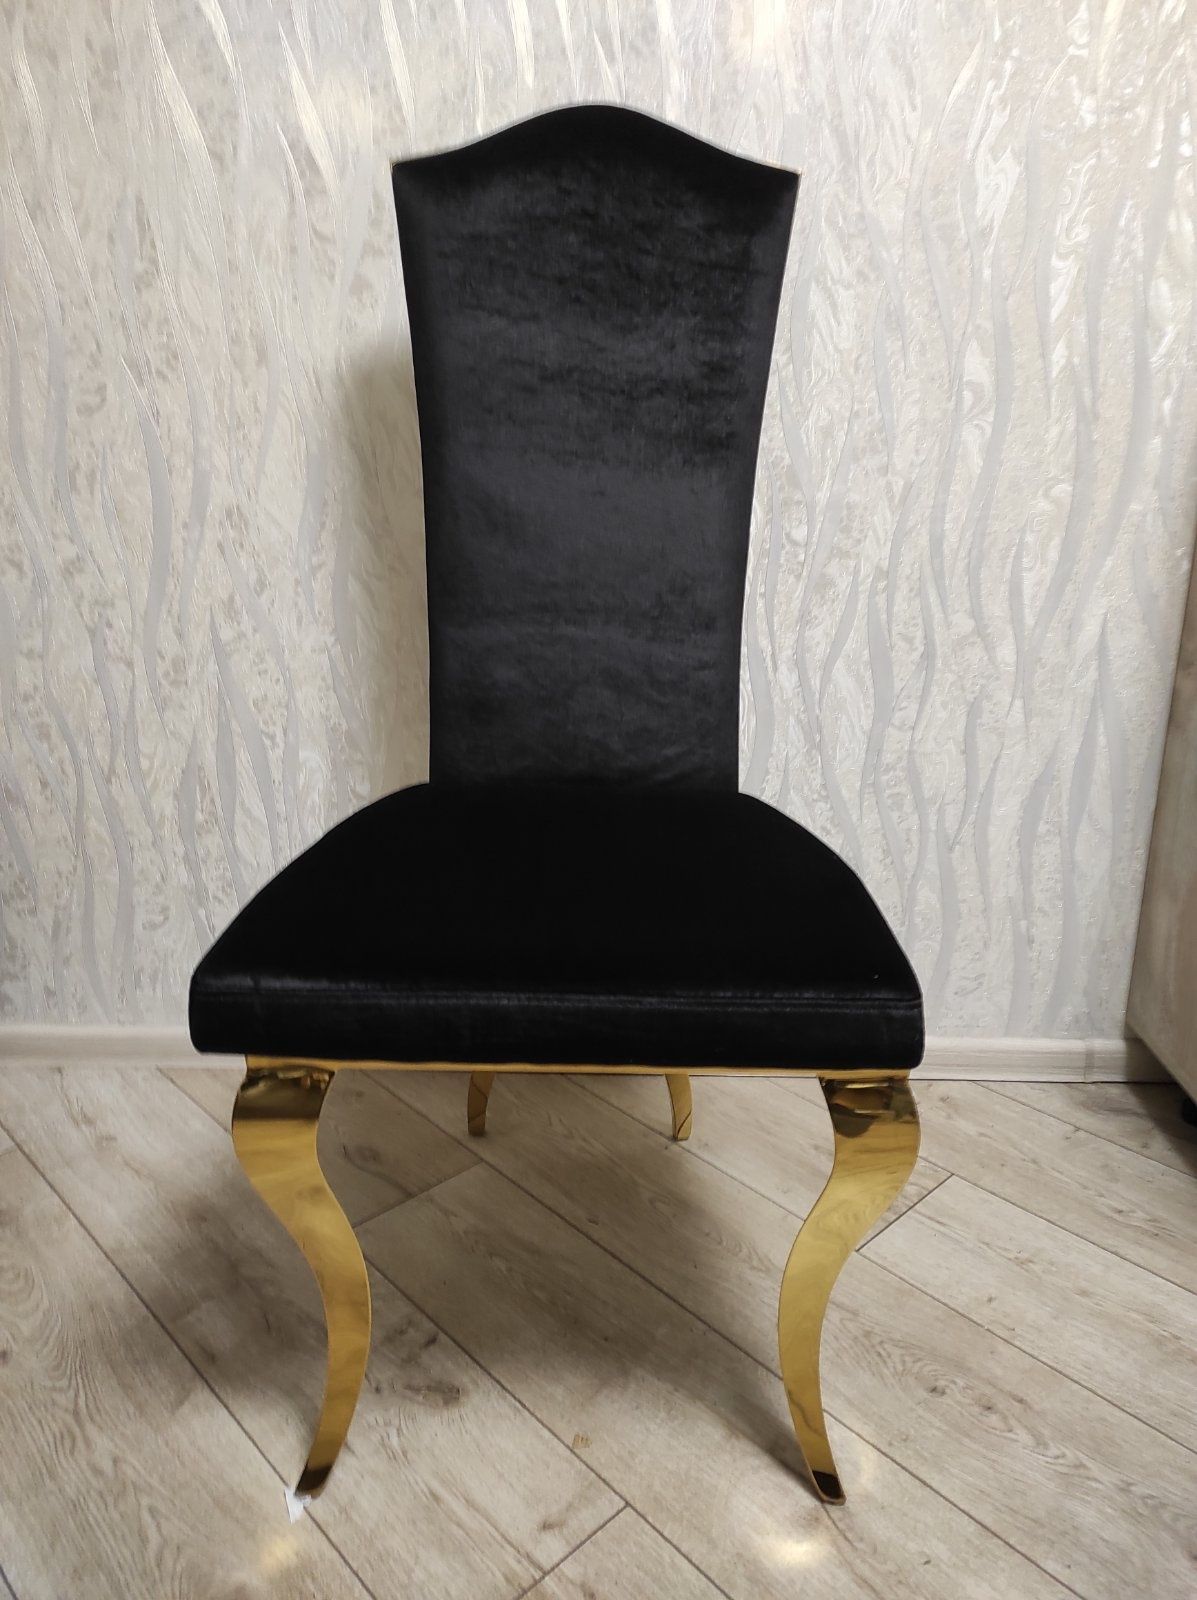 Продам стильные, эксклюзивные и элитные стулья. Производство Польши.